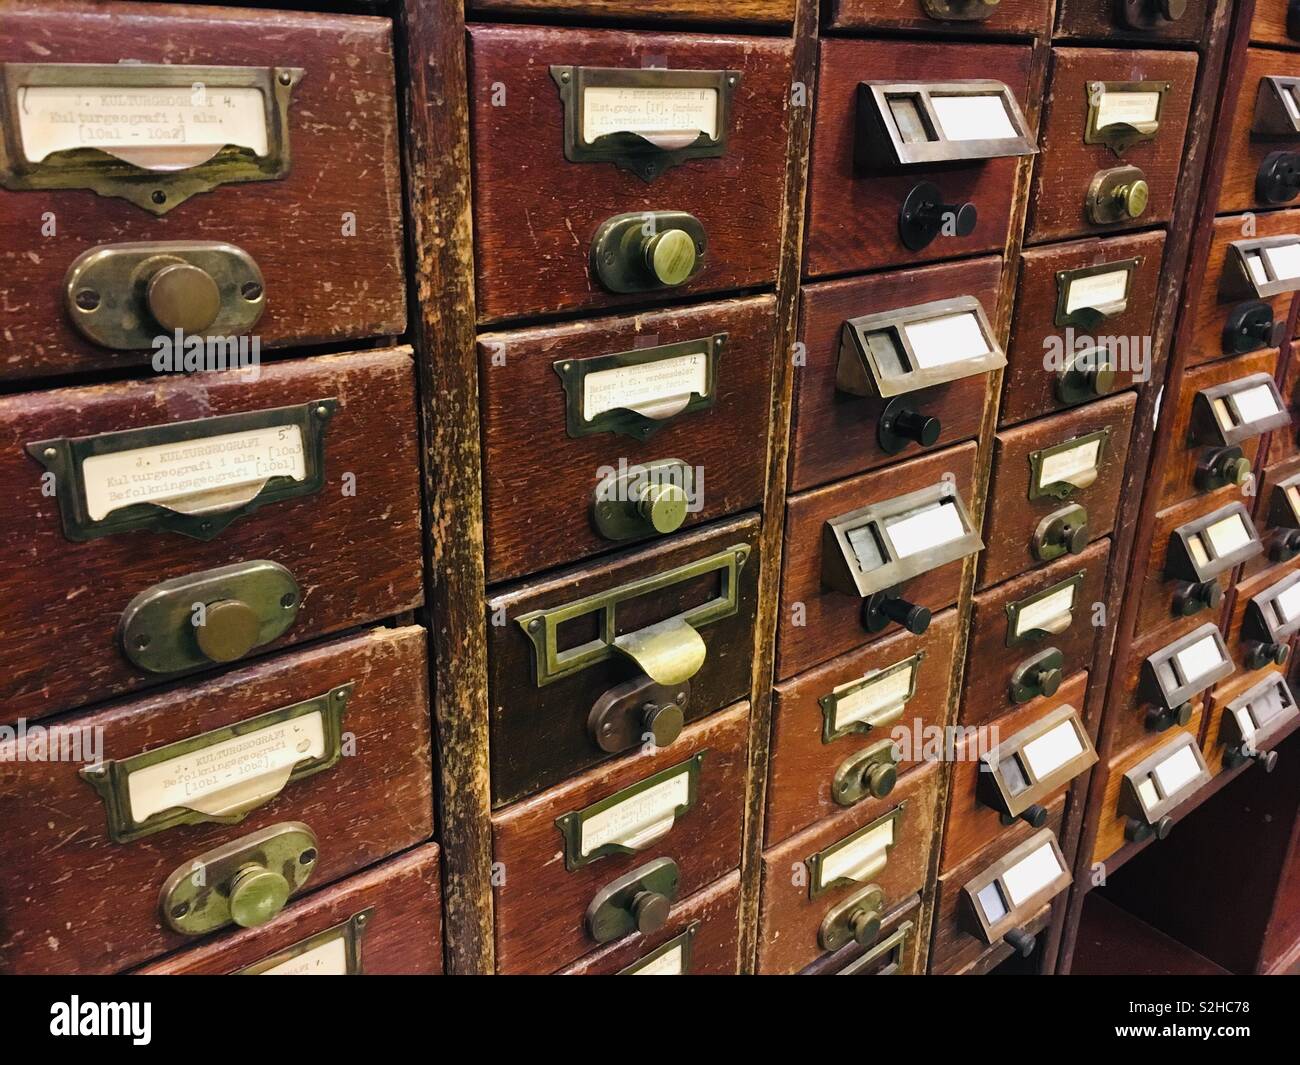 Norwegian Biblioteca Nazionale di Oslo - catalogo libreria cassettiere Foto  stock - Alamy